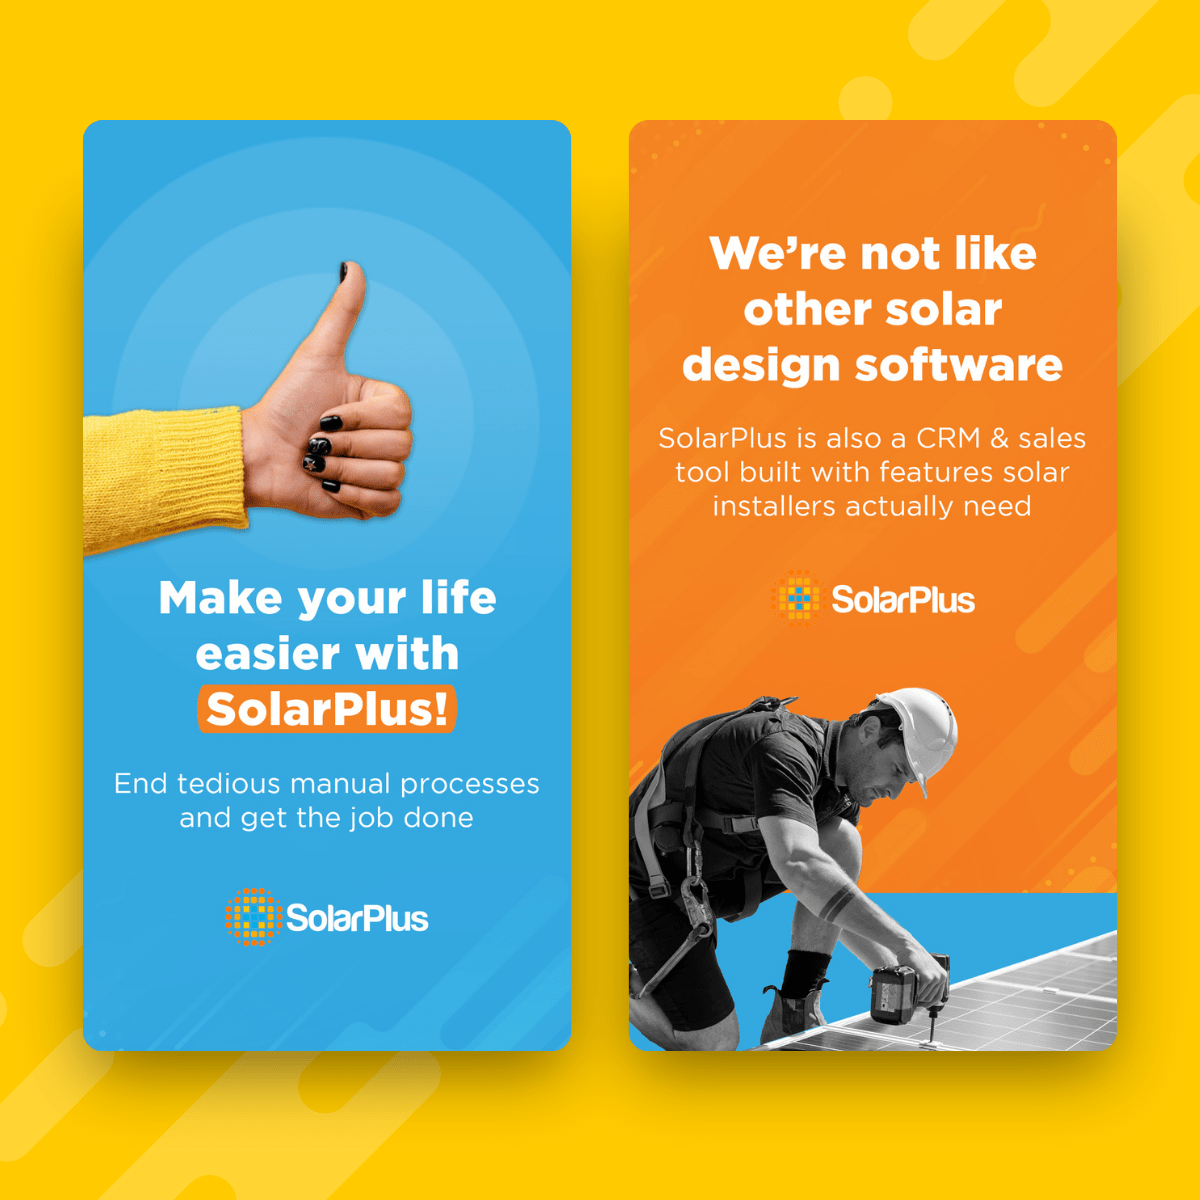 Solar Plus Ads 2